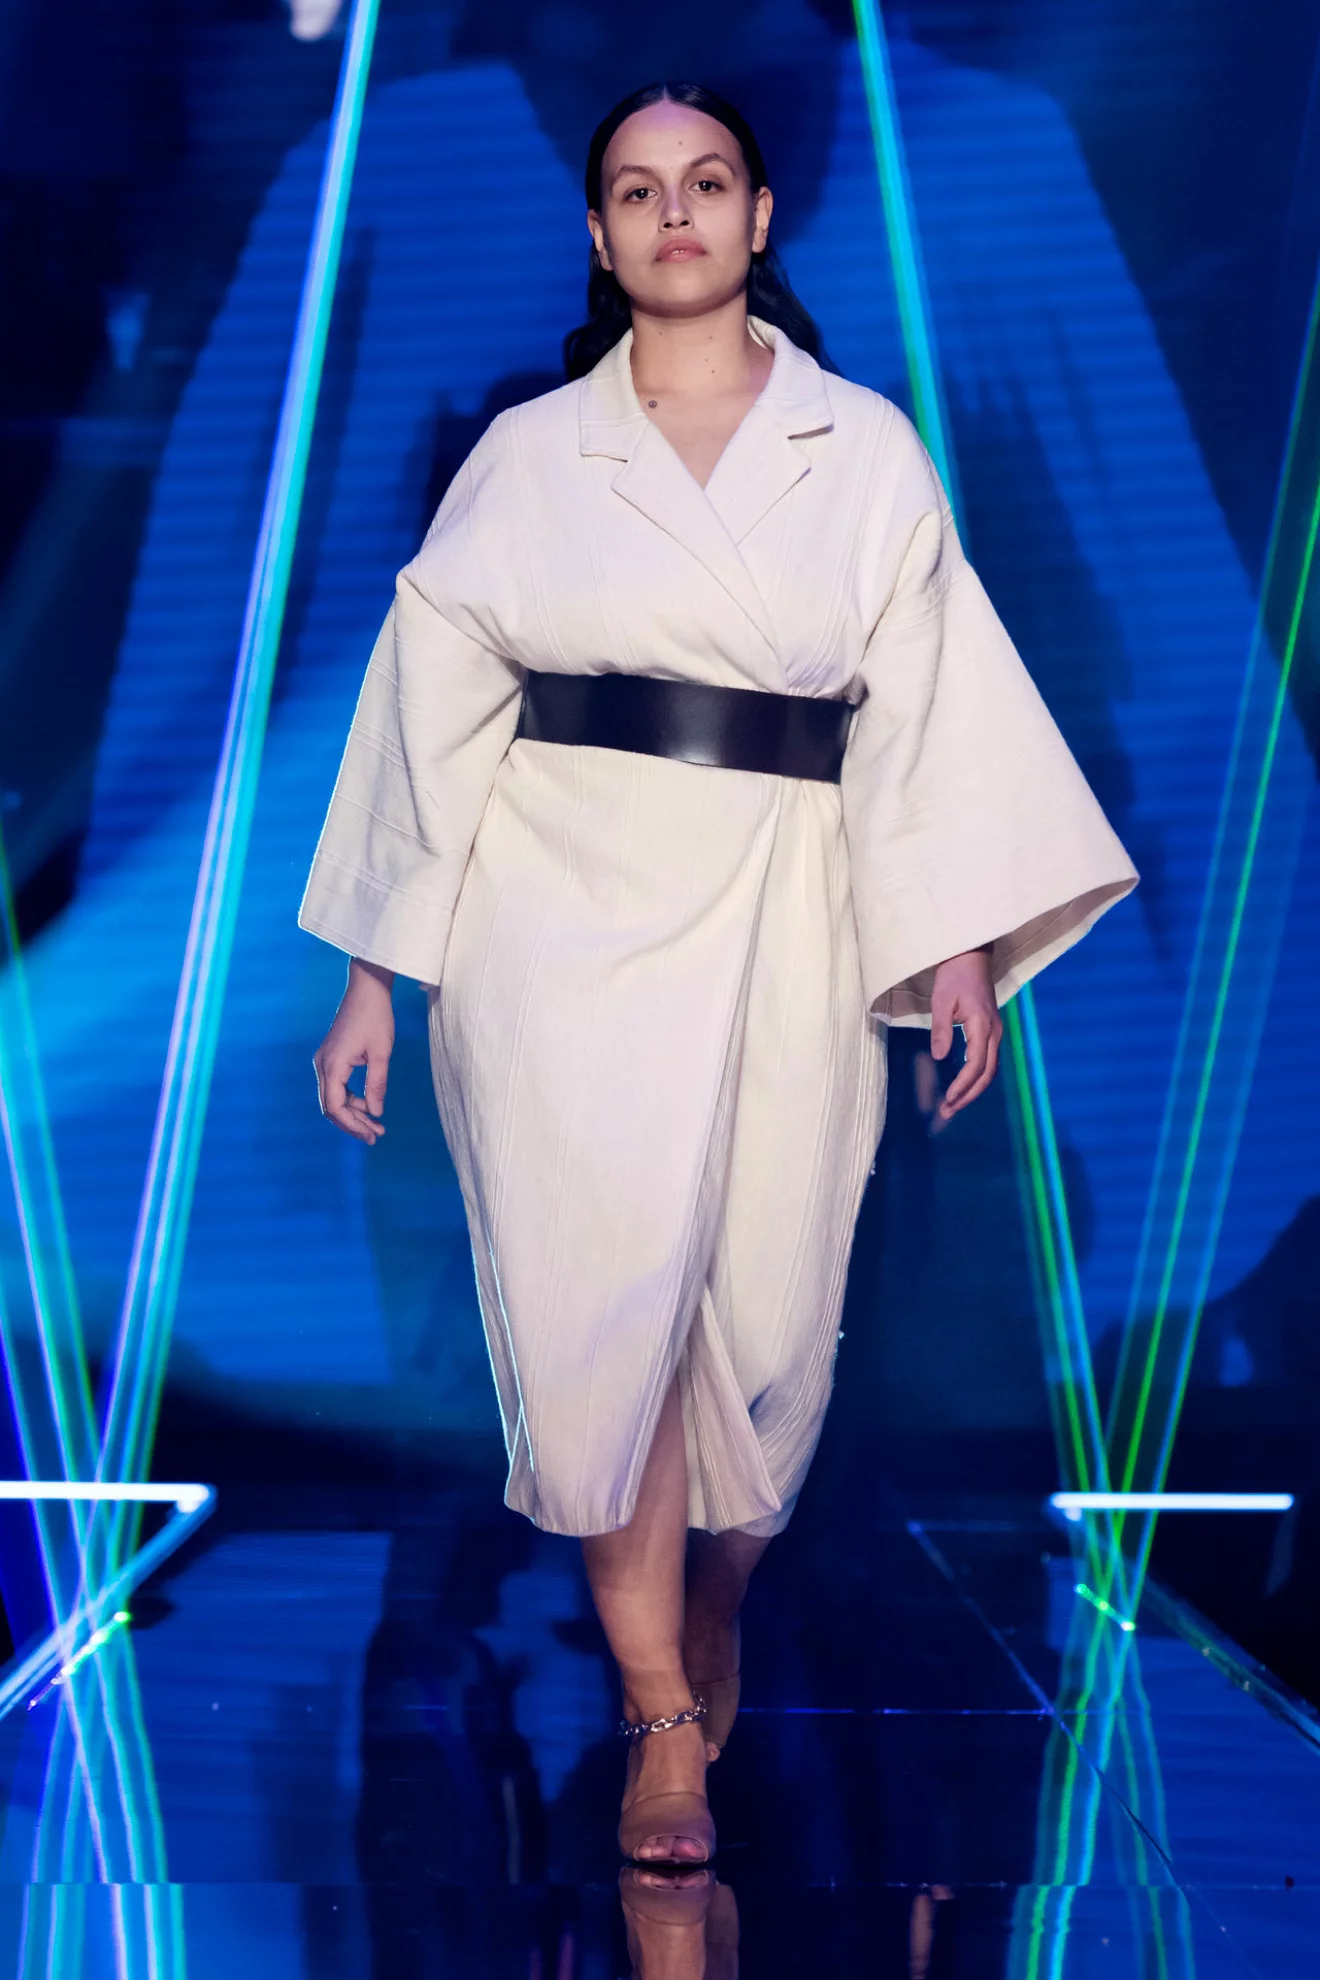 Vit kimonoklänning med svart markerad bälte i midjan från visningen av årets nykomling Amanda Borgfors Mészáros.